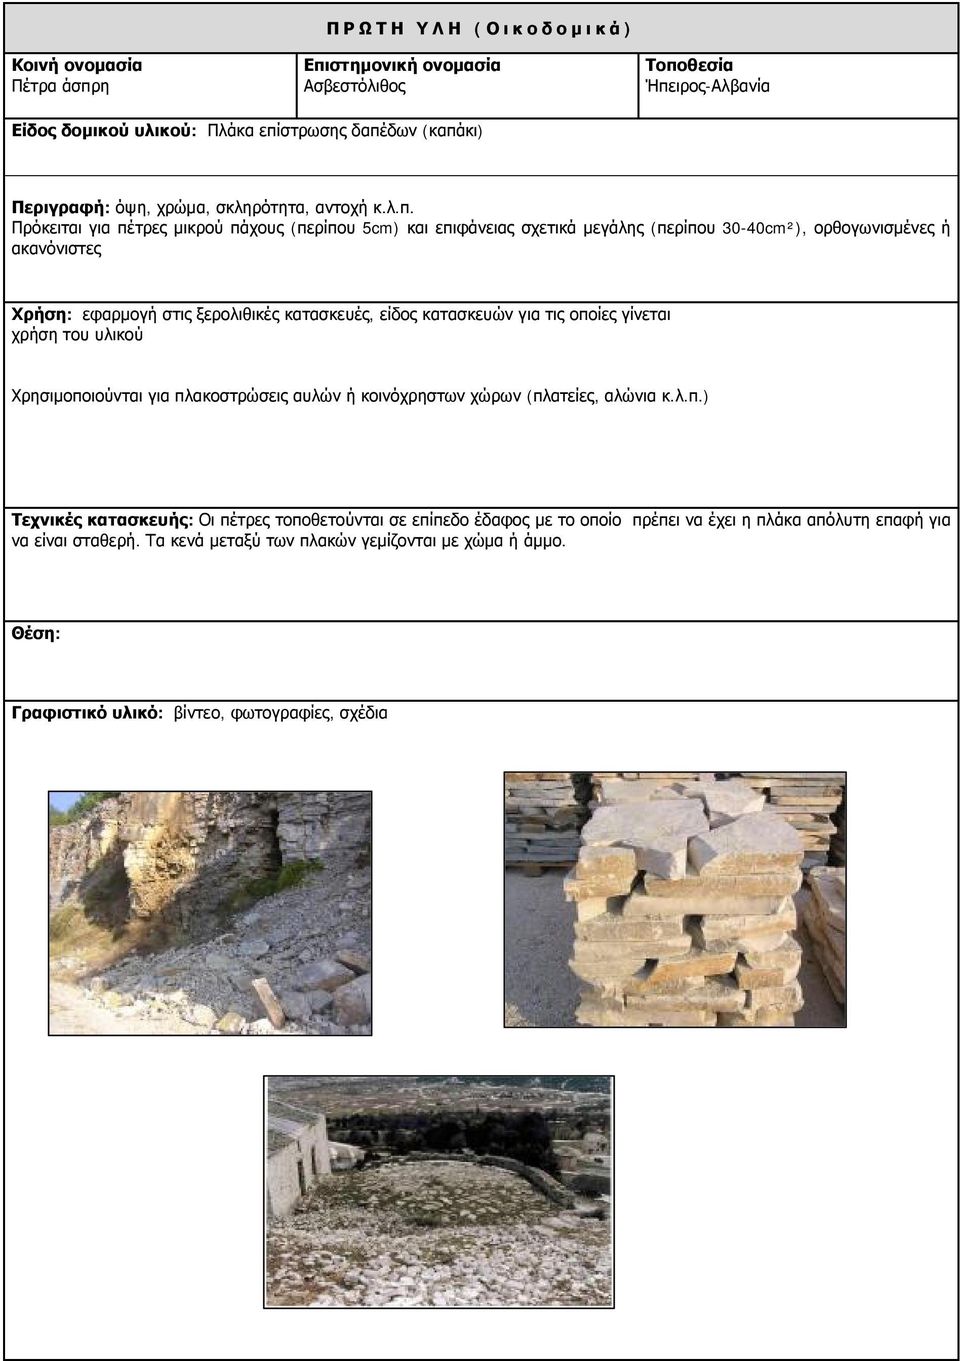 πλακοστρώσεις αυλών ή κοινόχρηστων χώρων (πλατείες, αλώνια κ.λ.π.) Τεχνικές κατασκευής: Οι πέτρες τοποθετούνται σε